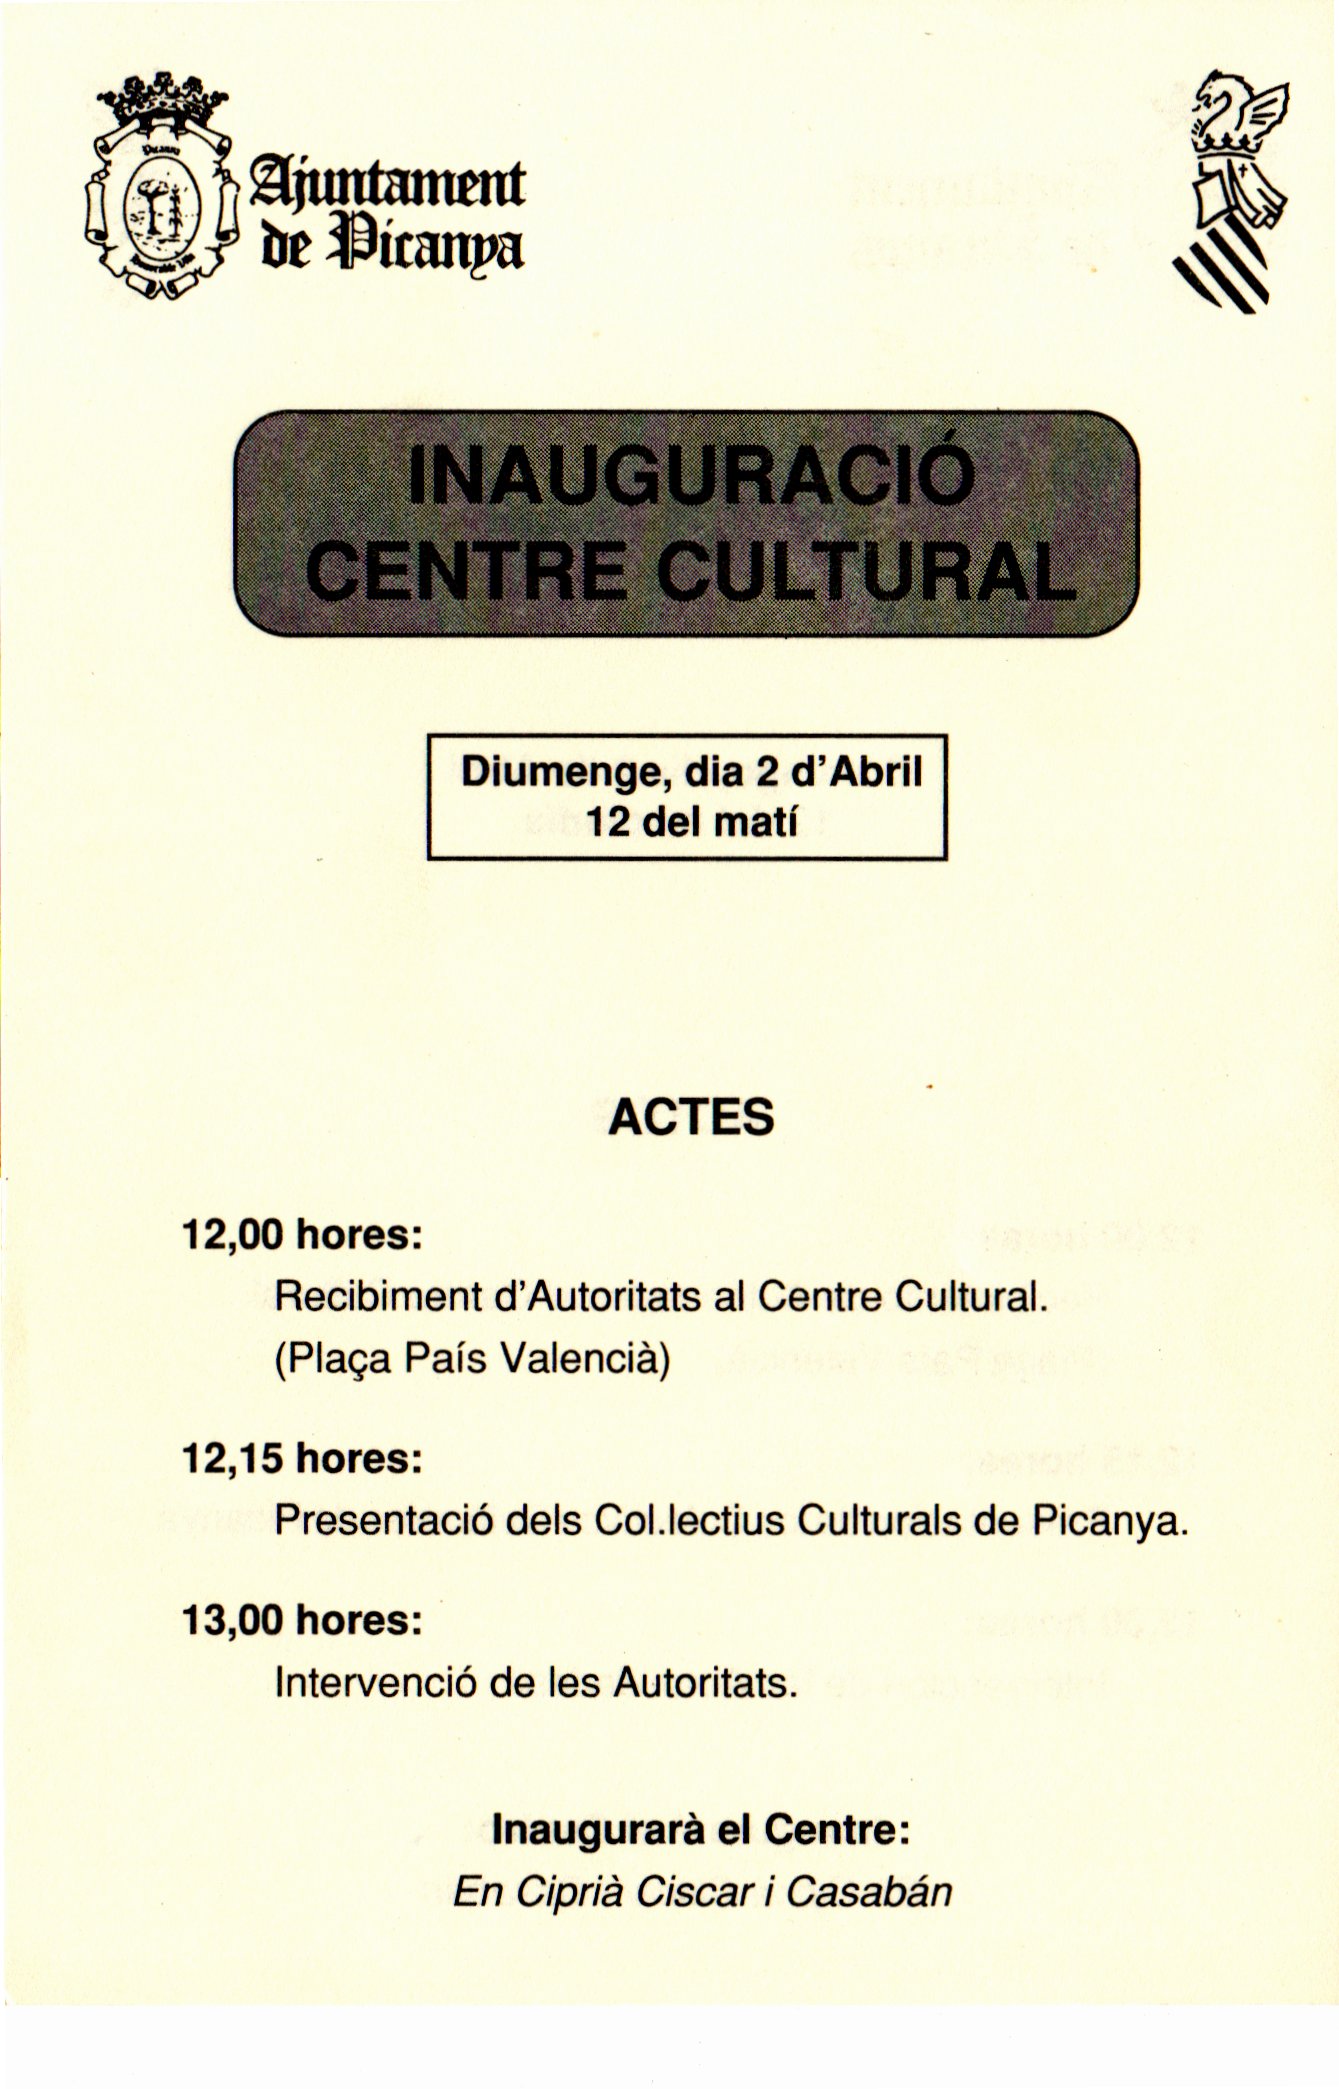 CEL-DO-A0378 - Inauguració Centre Cultural